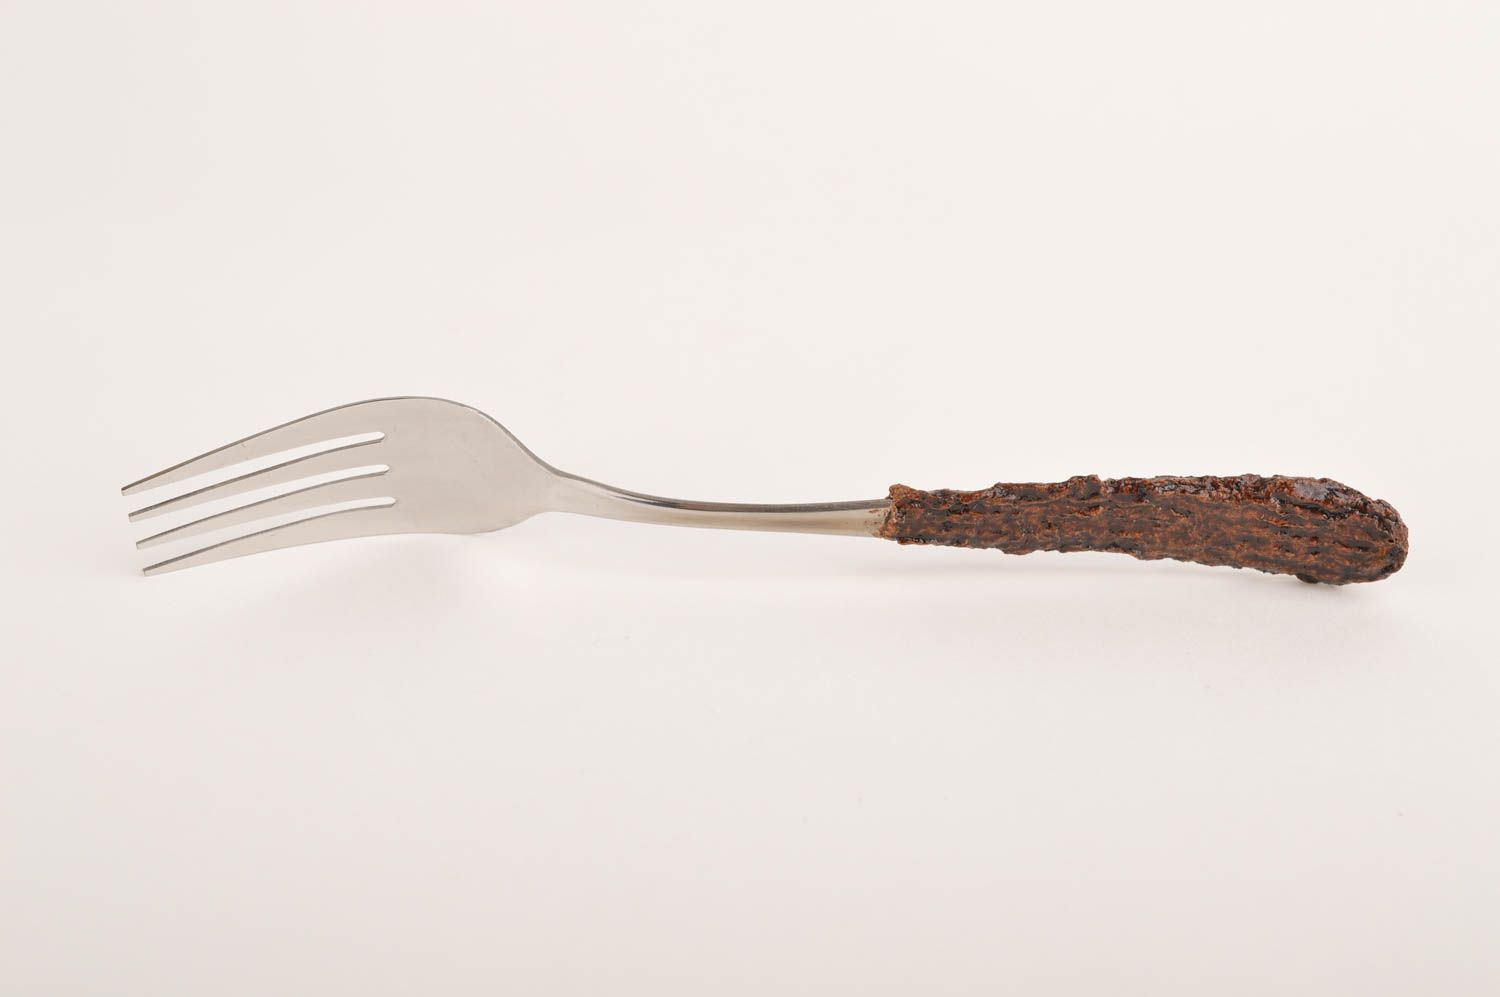 Handmade fork designer spork metal cutlery designer kitchen utensils gift ideas photo 2